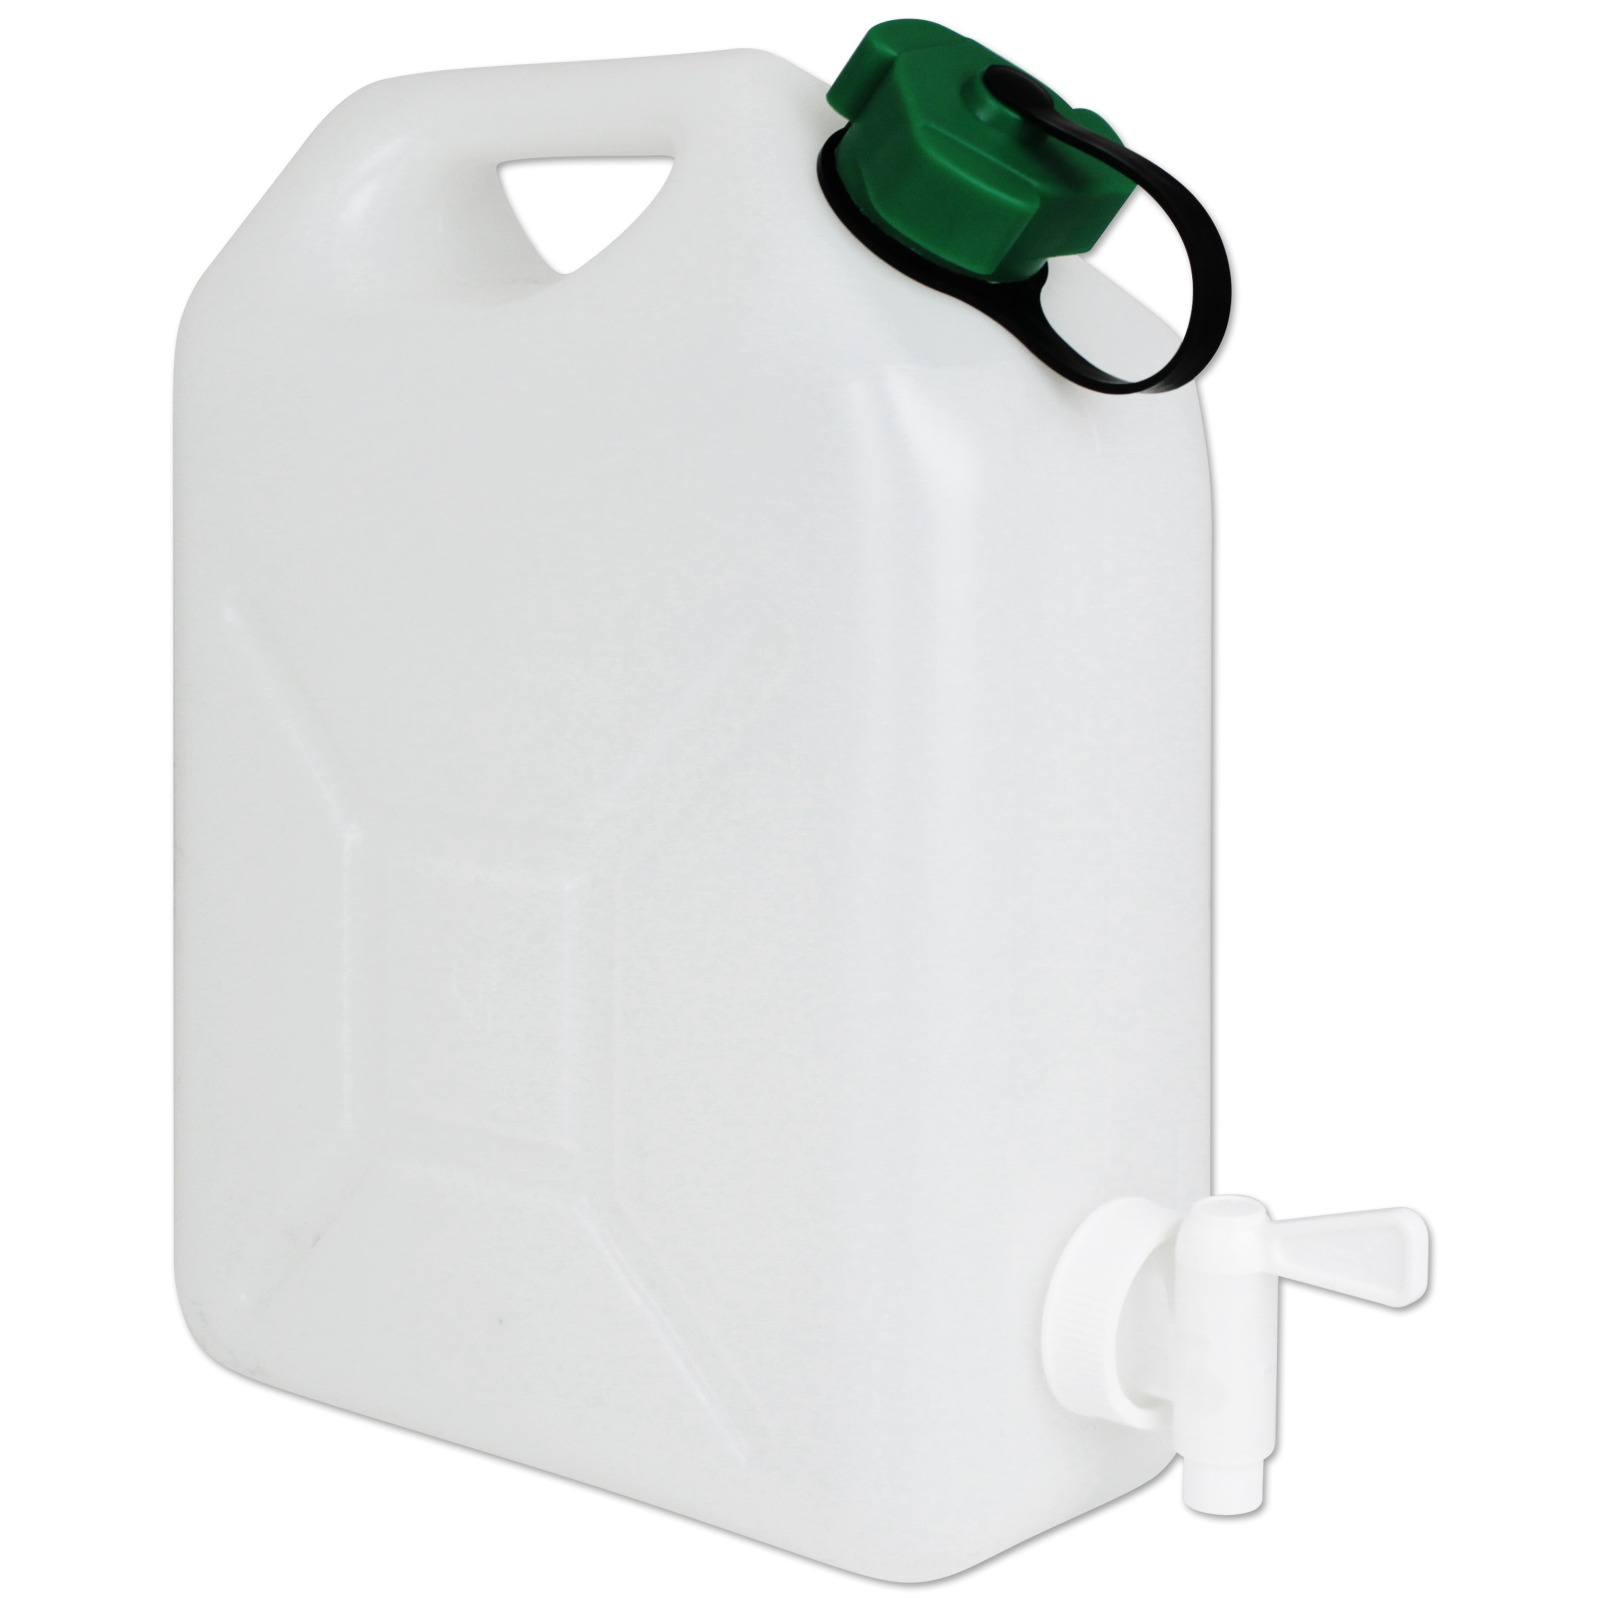 Trinkwasserkanister 50L Wasserkanister Plastik Wassertank Grosse Kapazität  Wasservorratsbehälter Mit Deckel Und Hahn Wasserspender